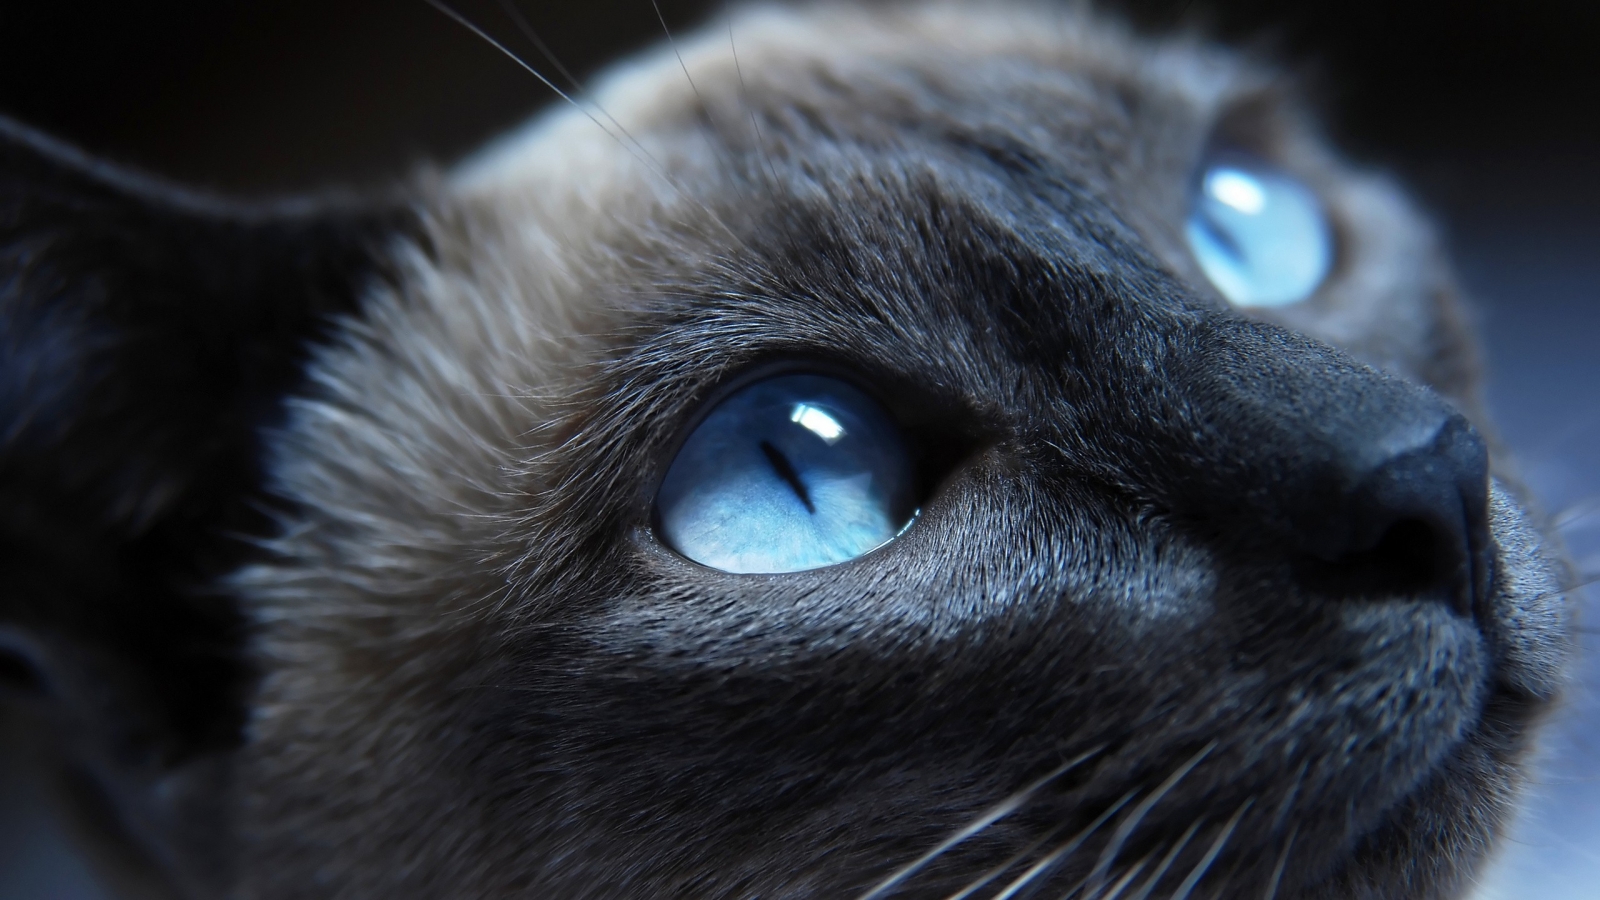 Cat Blue Eyes for 1600 x 900 HDTV resolution